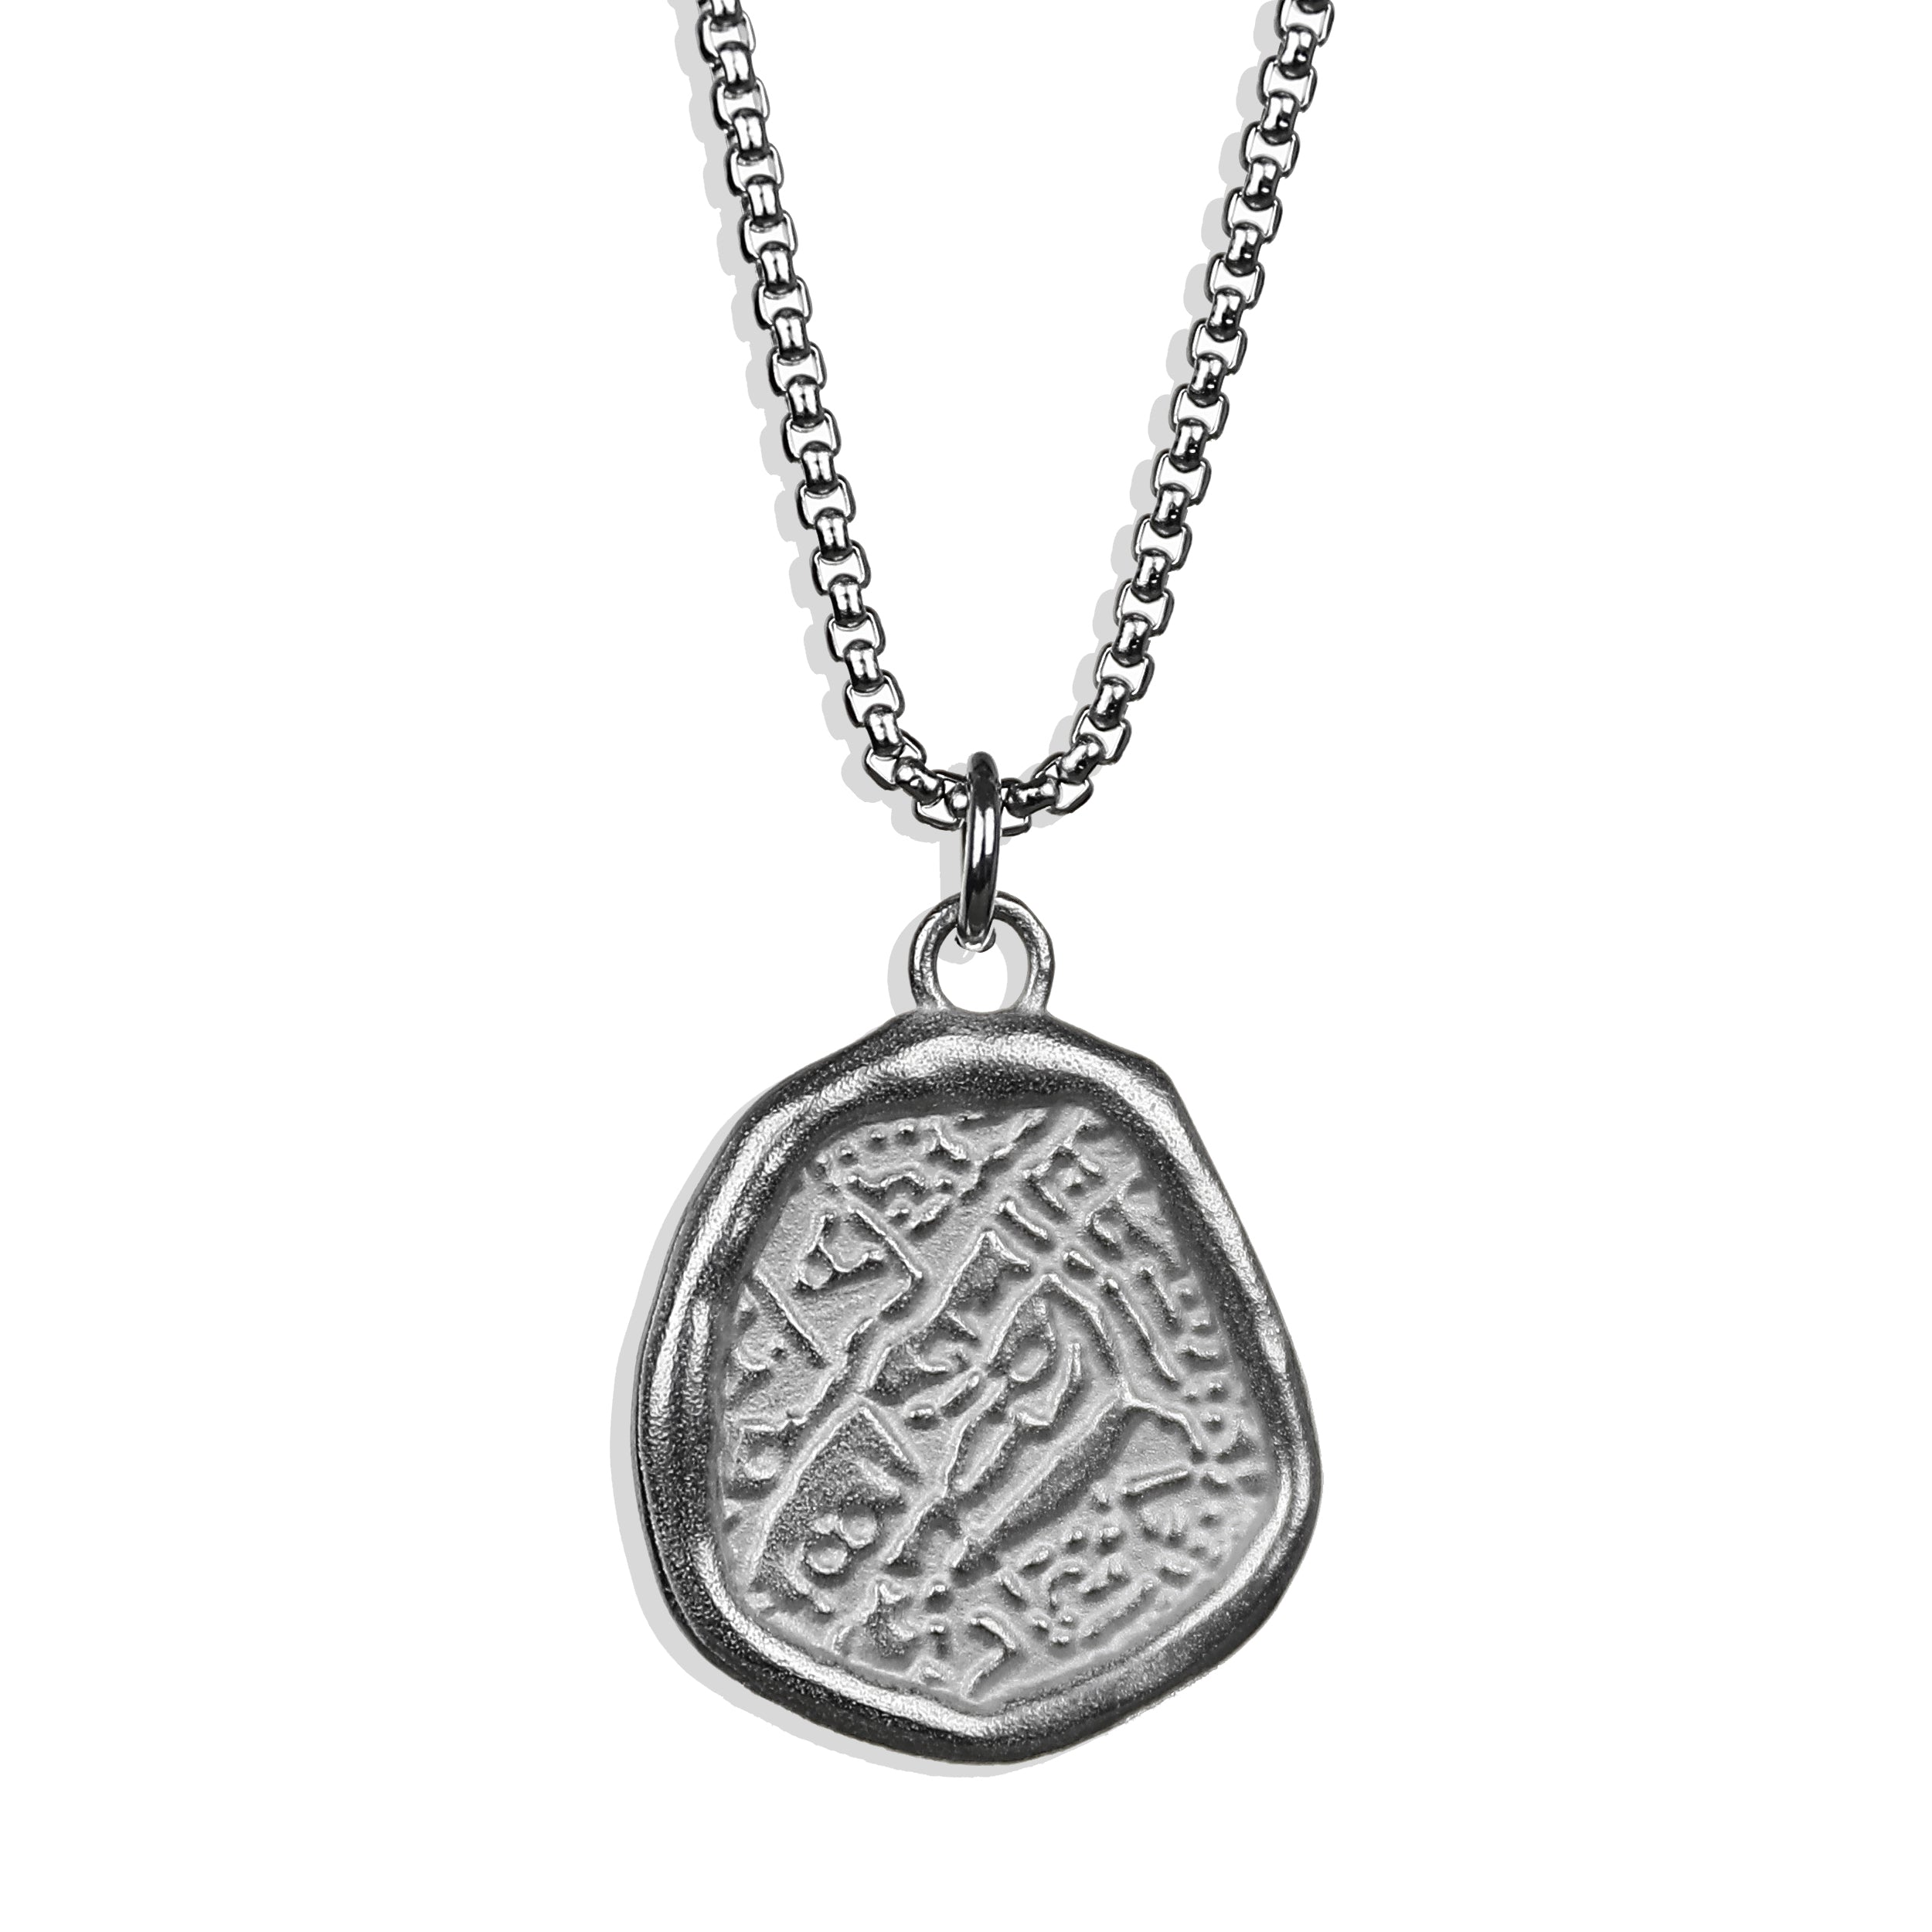 Shipwreck Coin Necklace - Silver